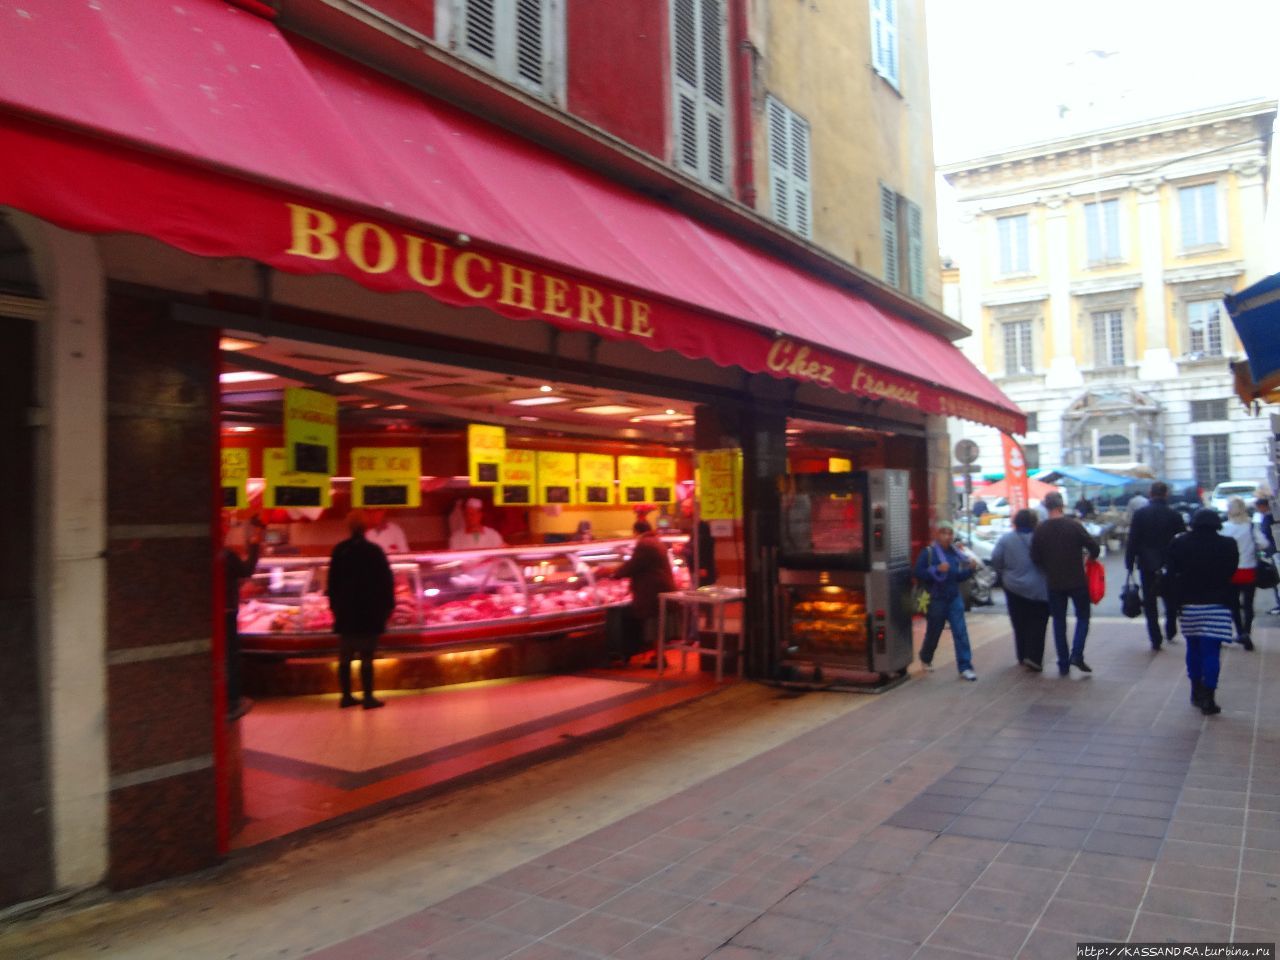 Boucherie de la Tour Ницца, Франция